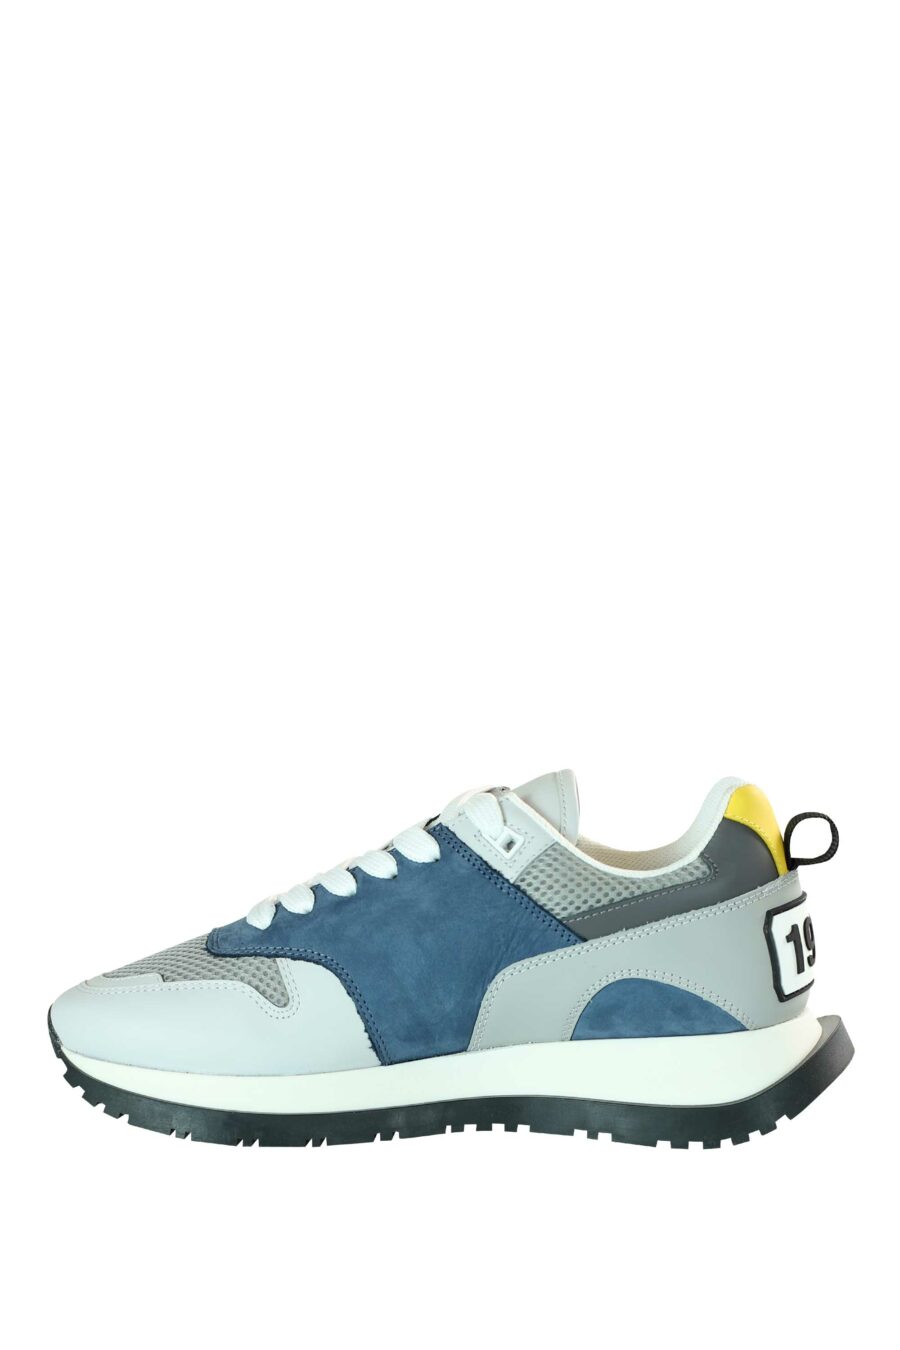 Zapatillas azules multicolor "running" con logo en suela - 8055777205549 3